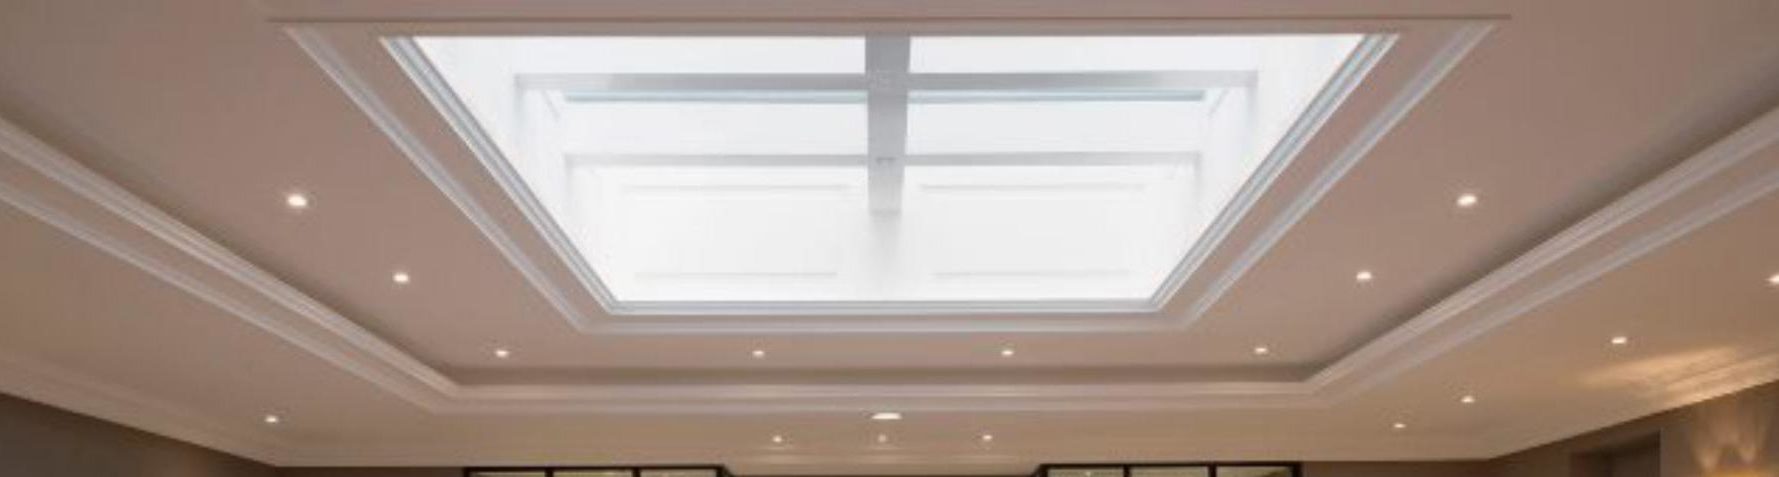 Vue intérieure d'un plancher vitré EI60 coupe-feu 1 heure dans un hôtel